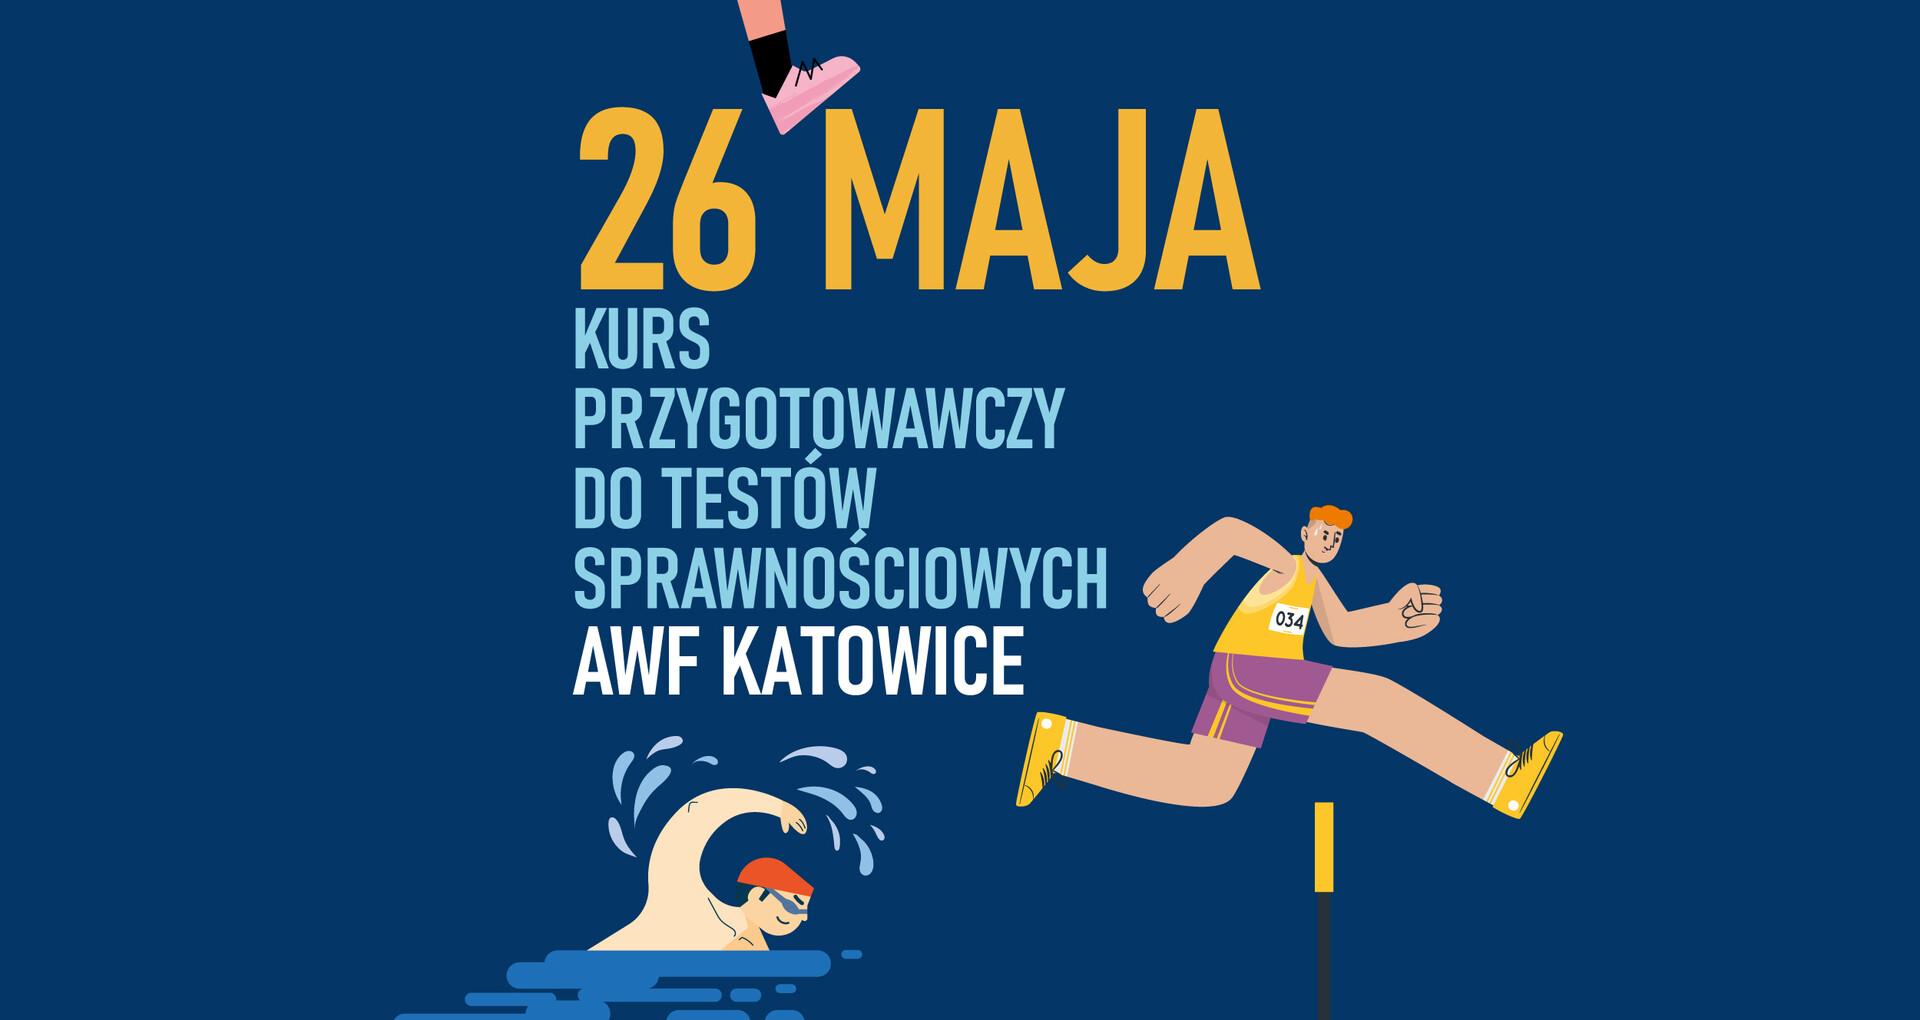 26 maja kurs przygotowawczy do testów sprawnościowych AWF Katowice